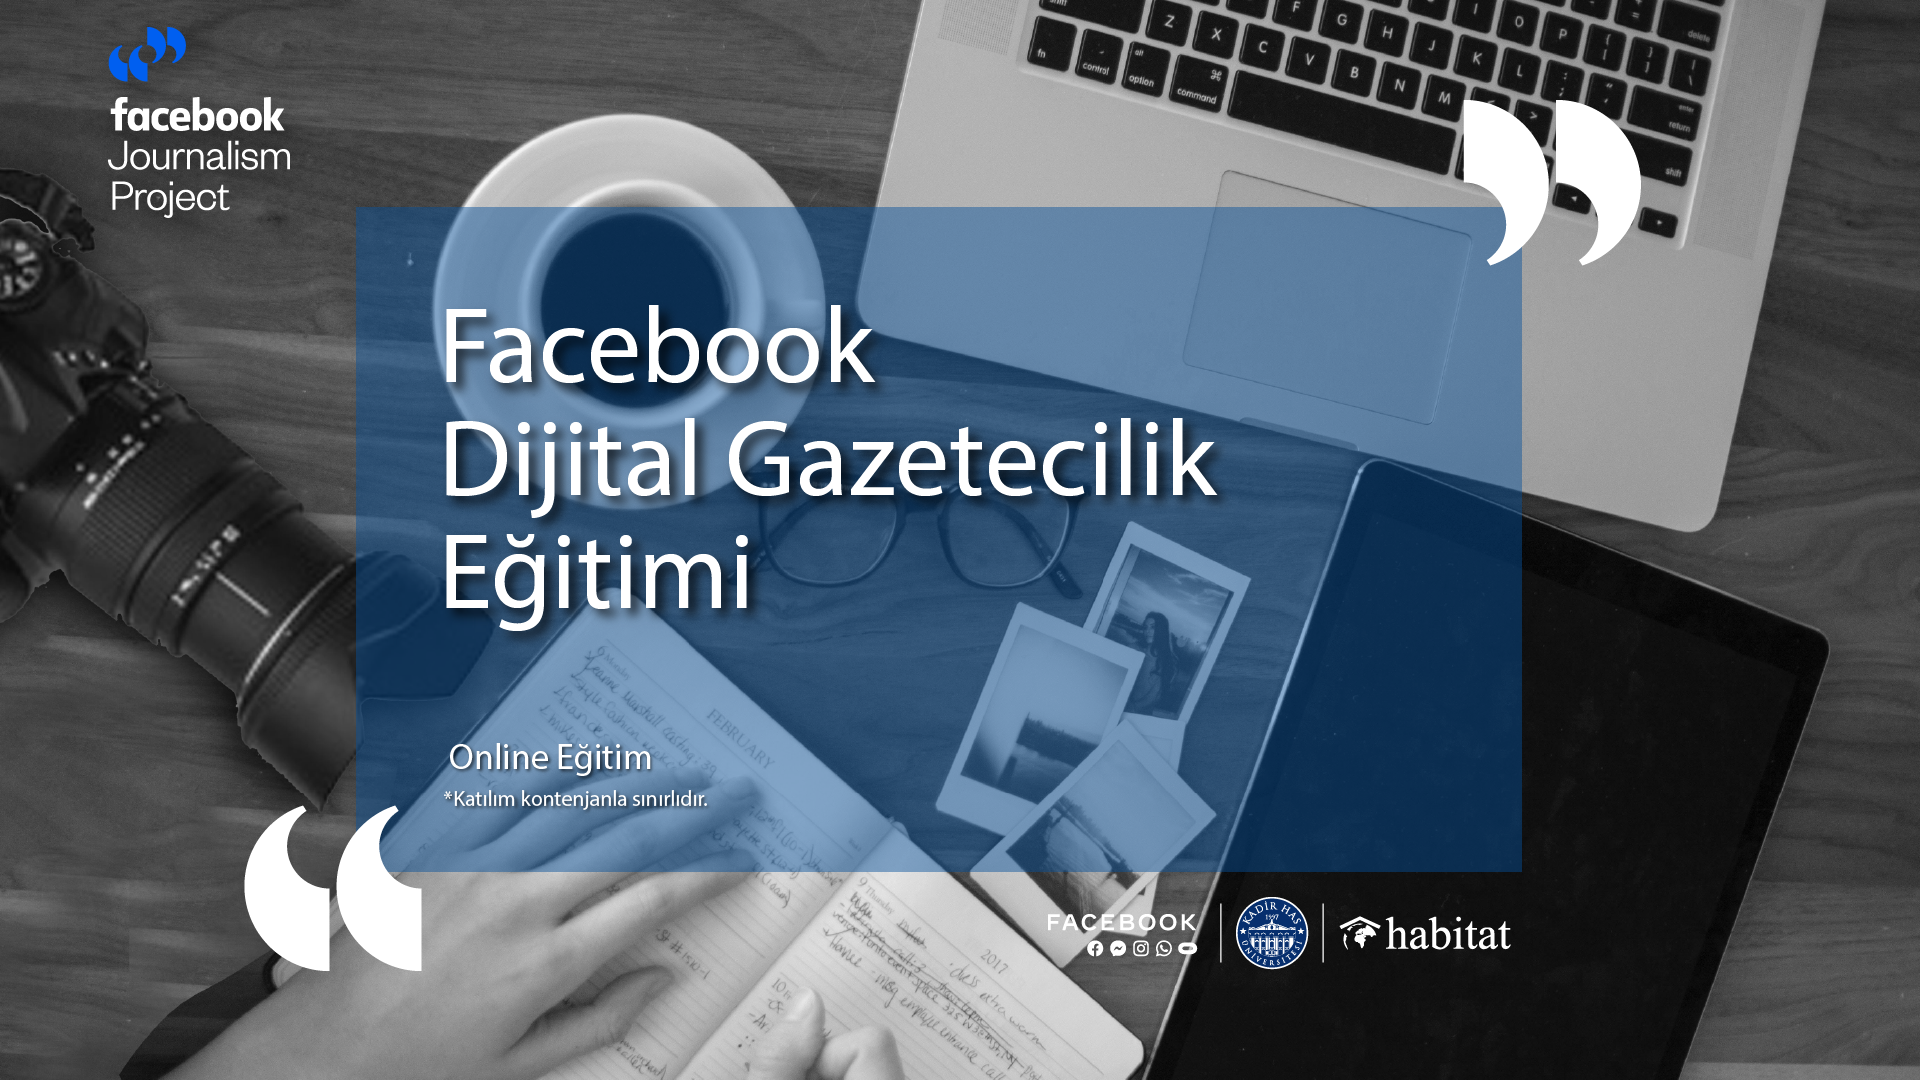 Facebook Dijital Gazetecilik Projesi Çevrimiçi Eğitimi